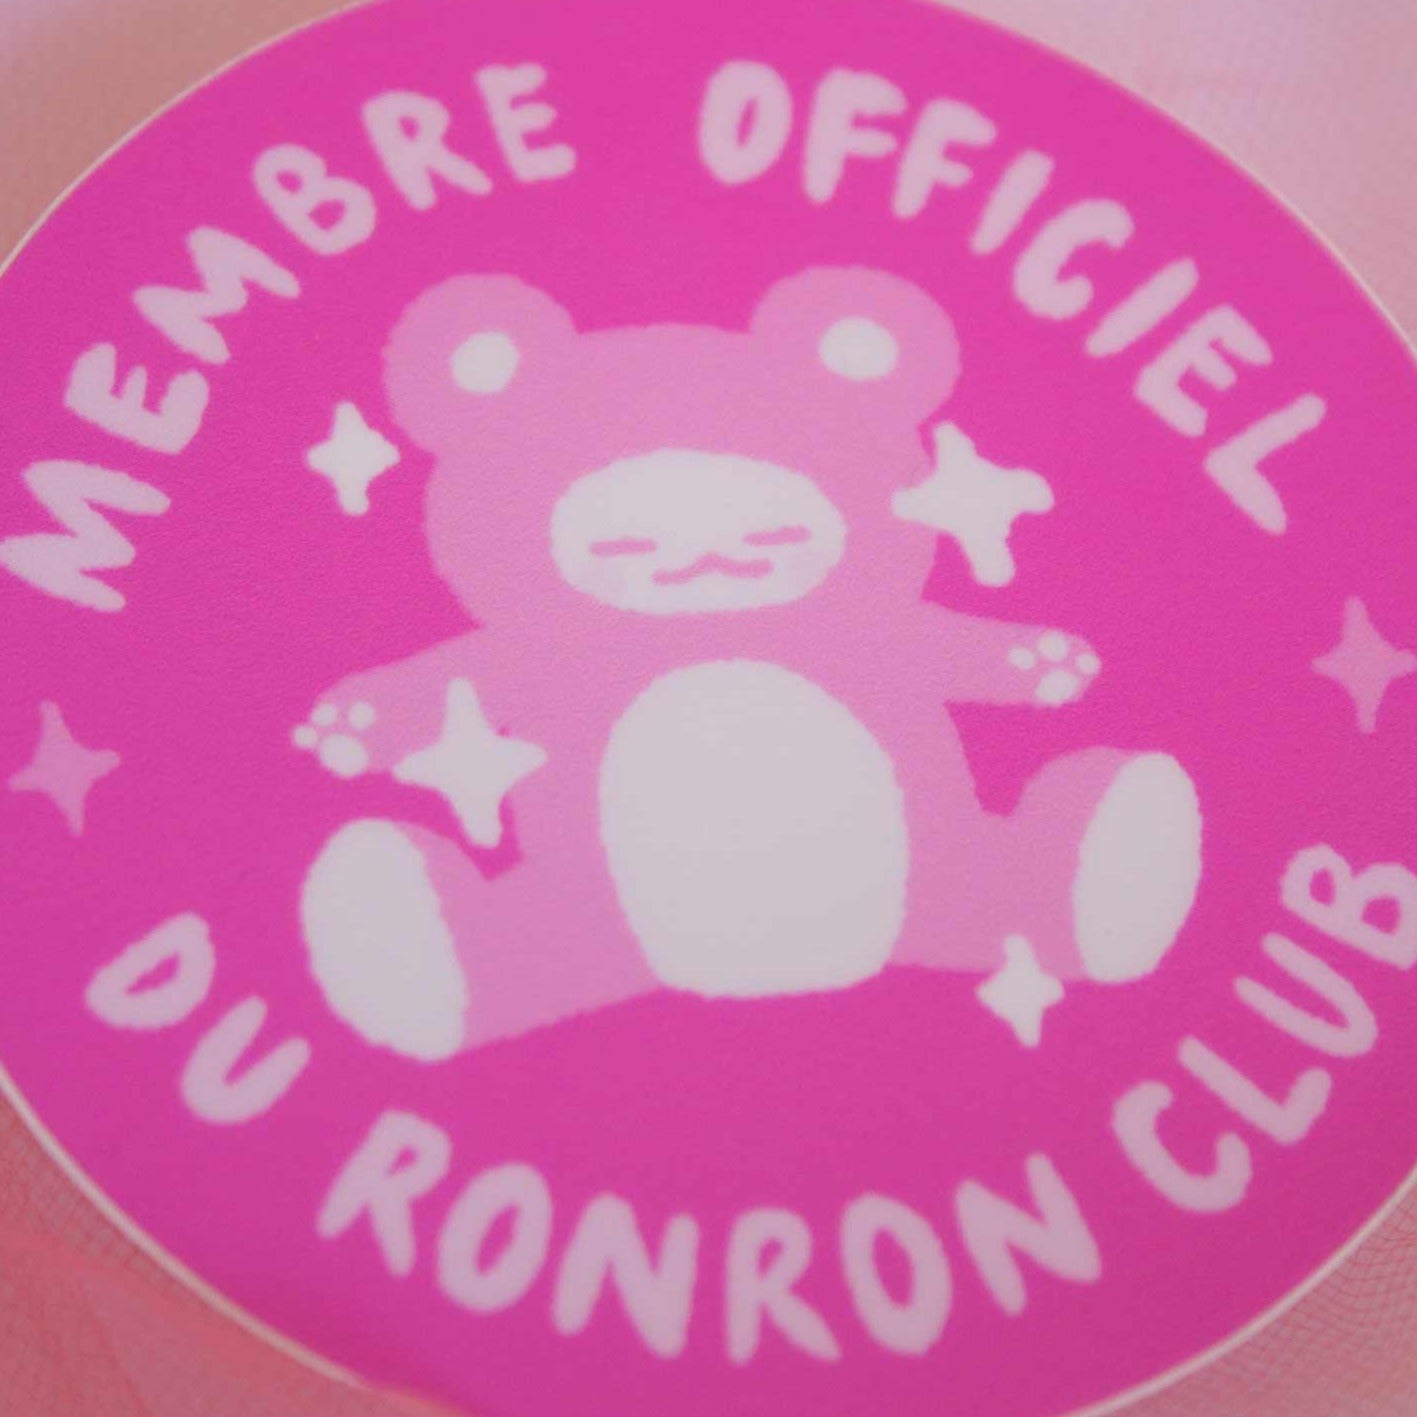 Autocollant membre officiel du Ronron club 3"